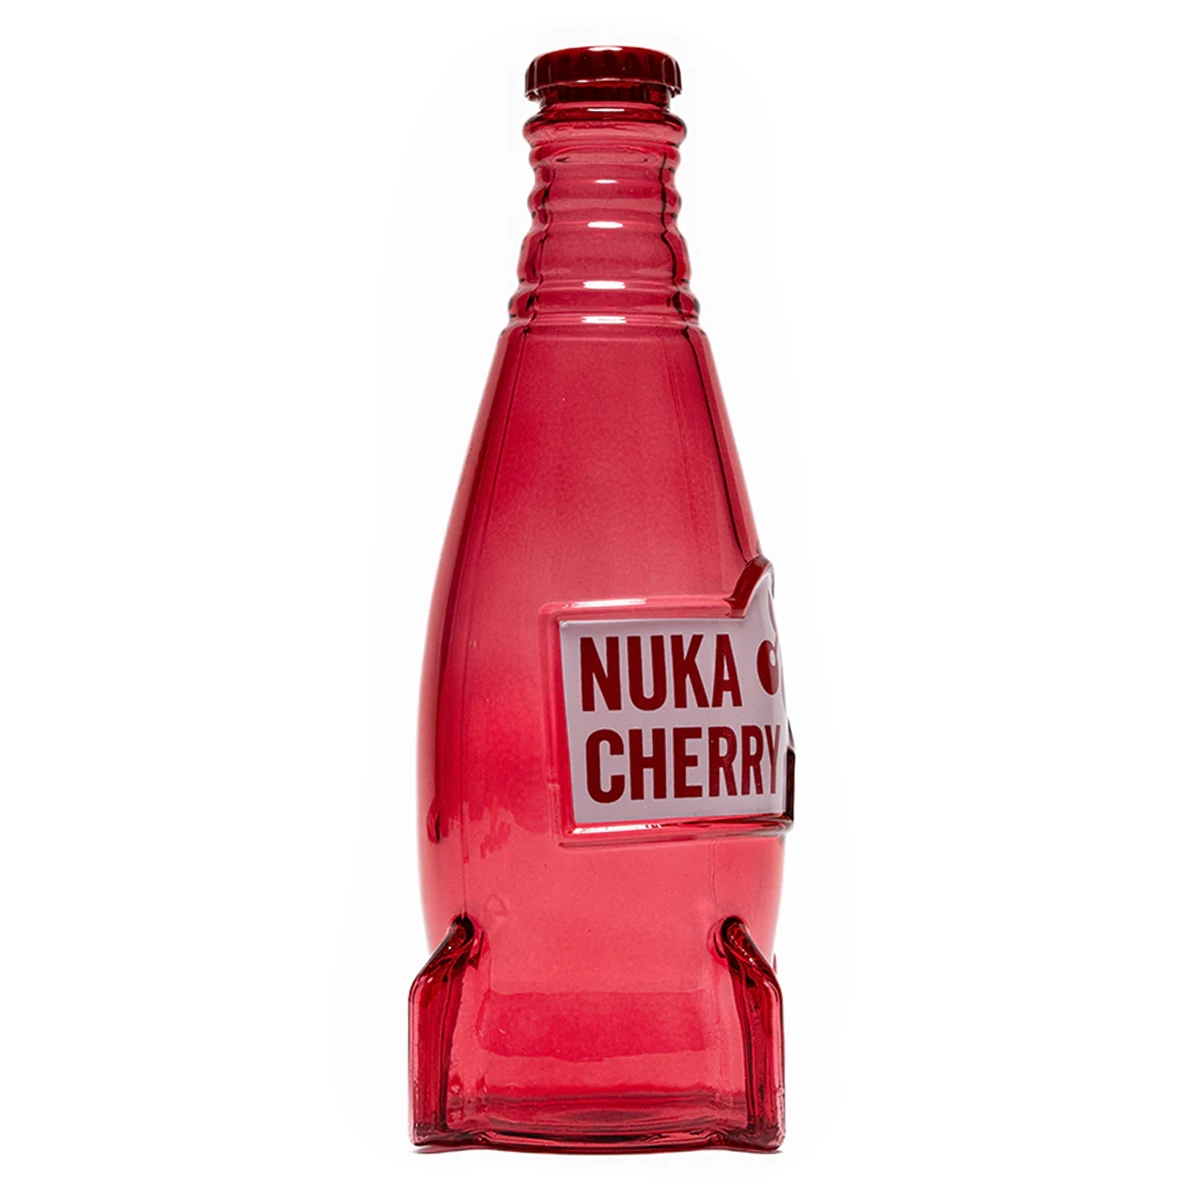 Fallout "Nuka Cola Cherry" Glasflasche und Kronkorken Image 4